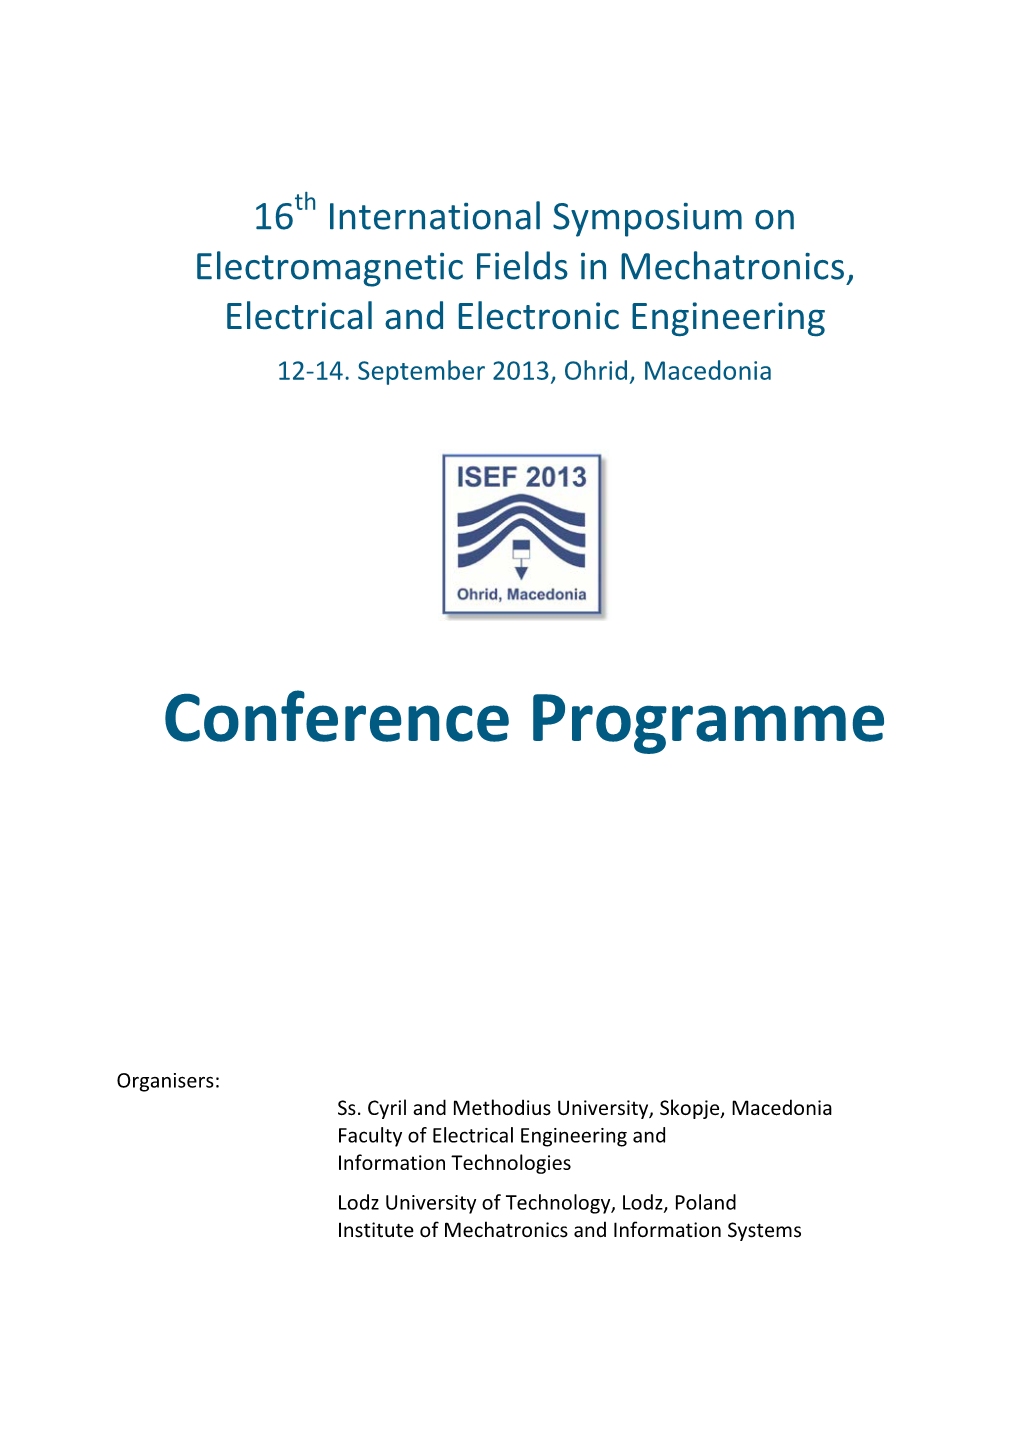 ISEF'2013 Conference Programme